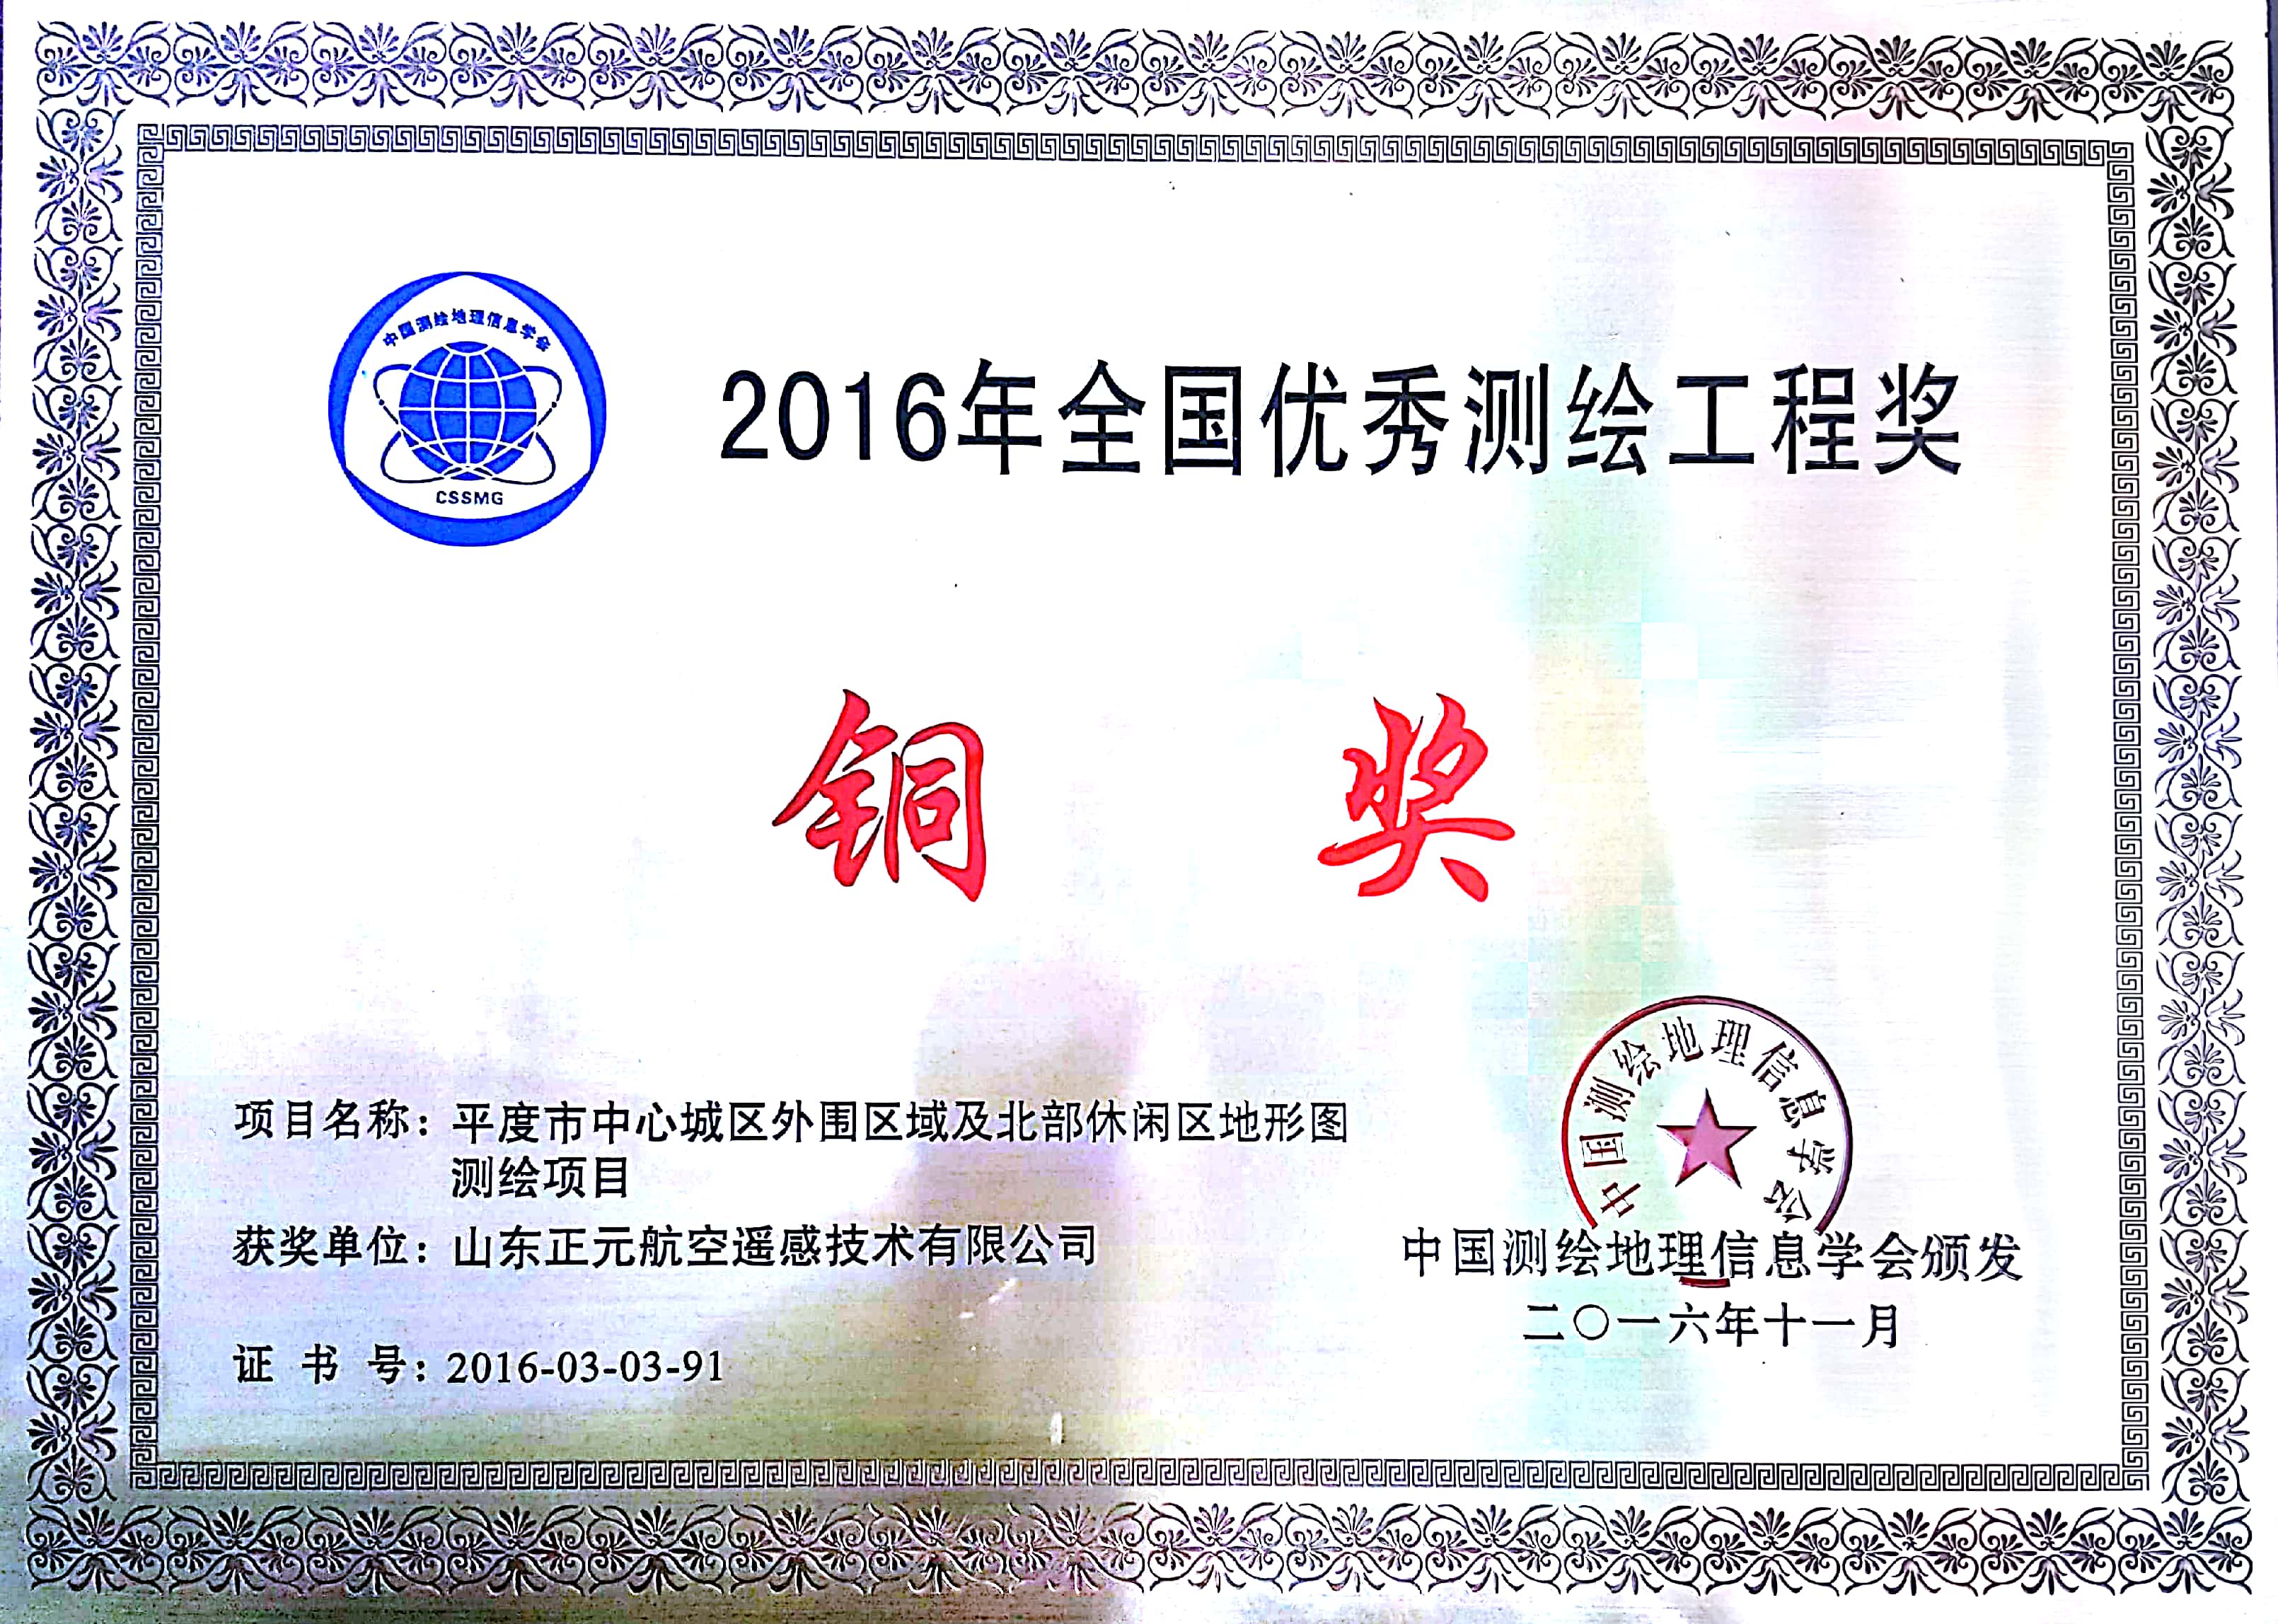 2016年全國優秀測繪工程銅獎